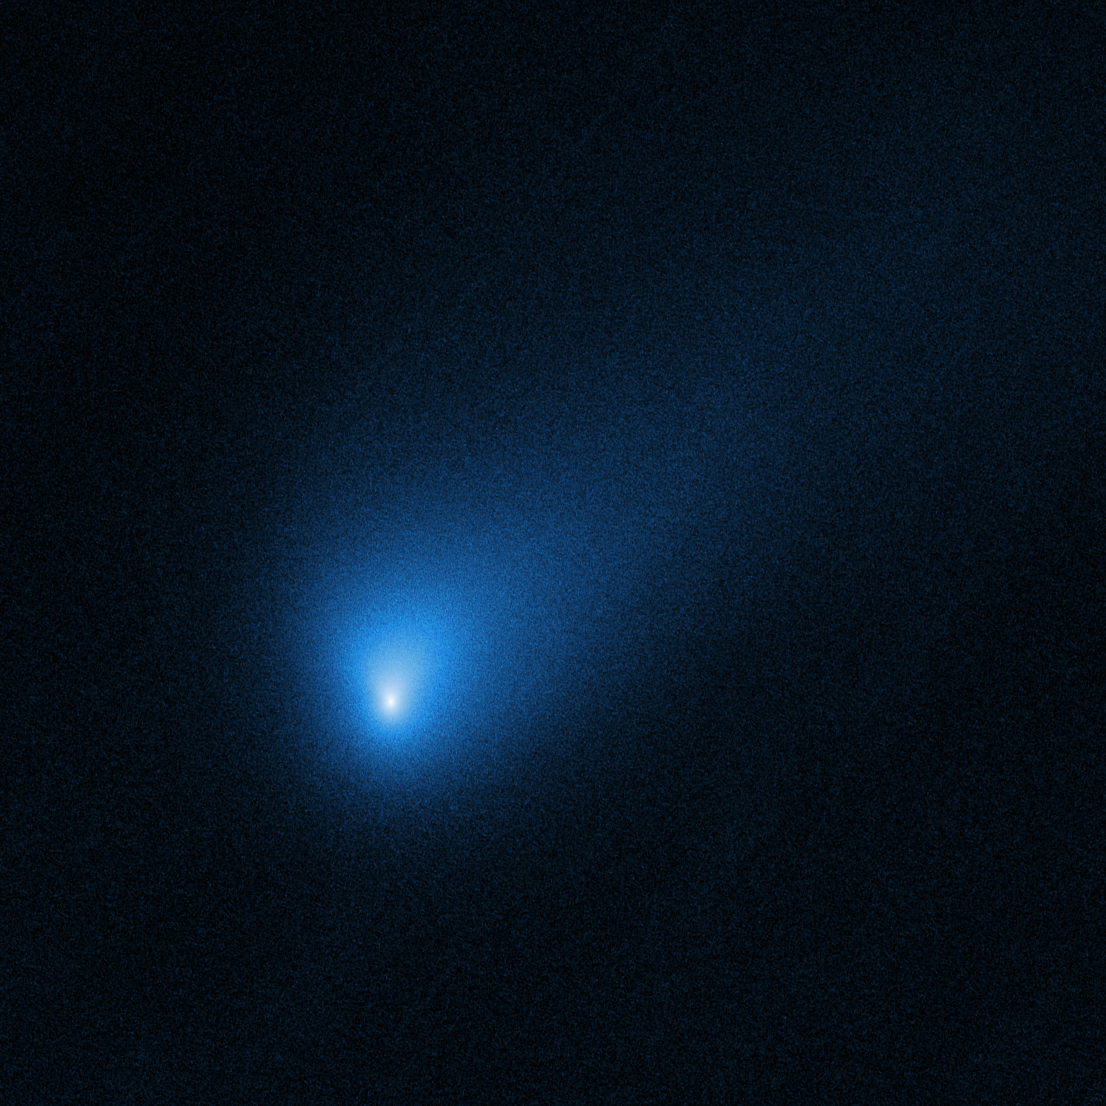 Hubble's View of Interstellar Comet 2I/Borisov